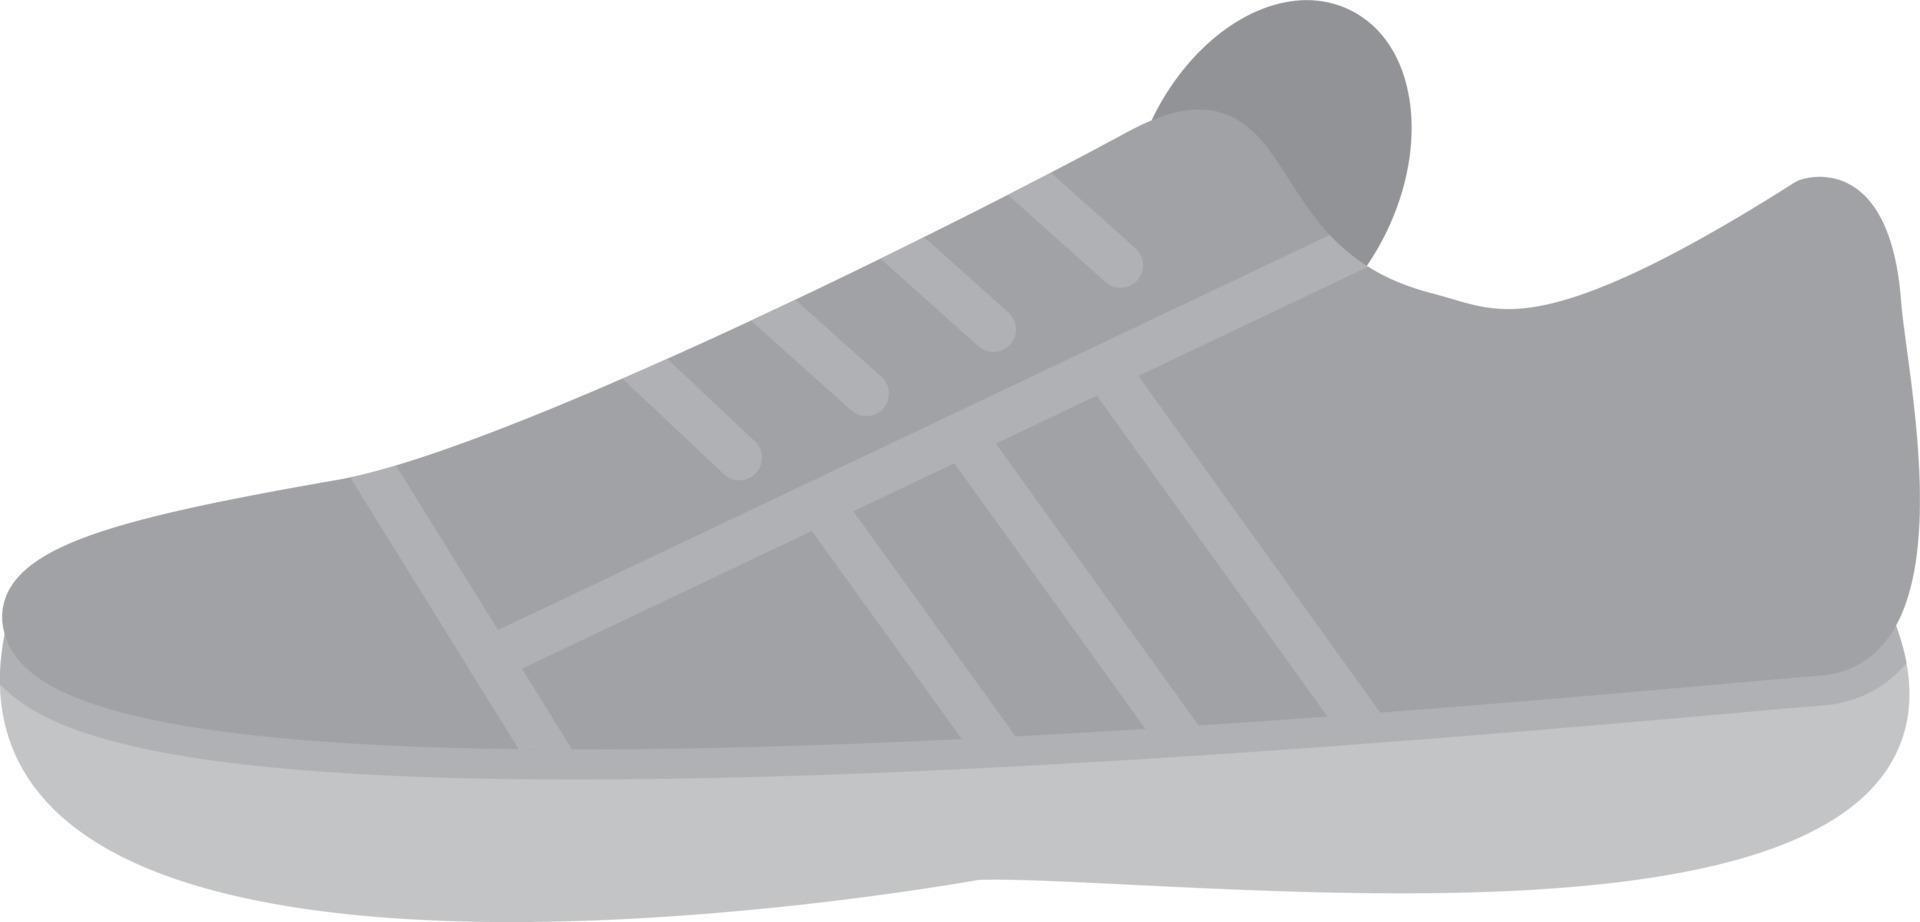 sneakers plat grijstinten vector